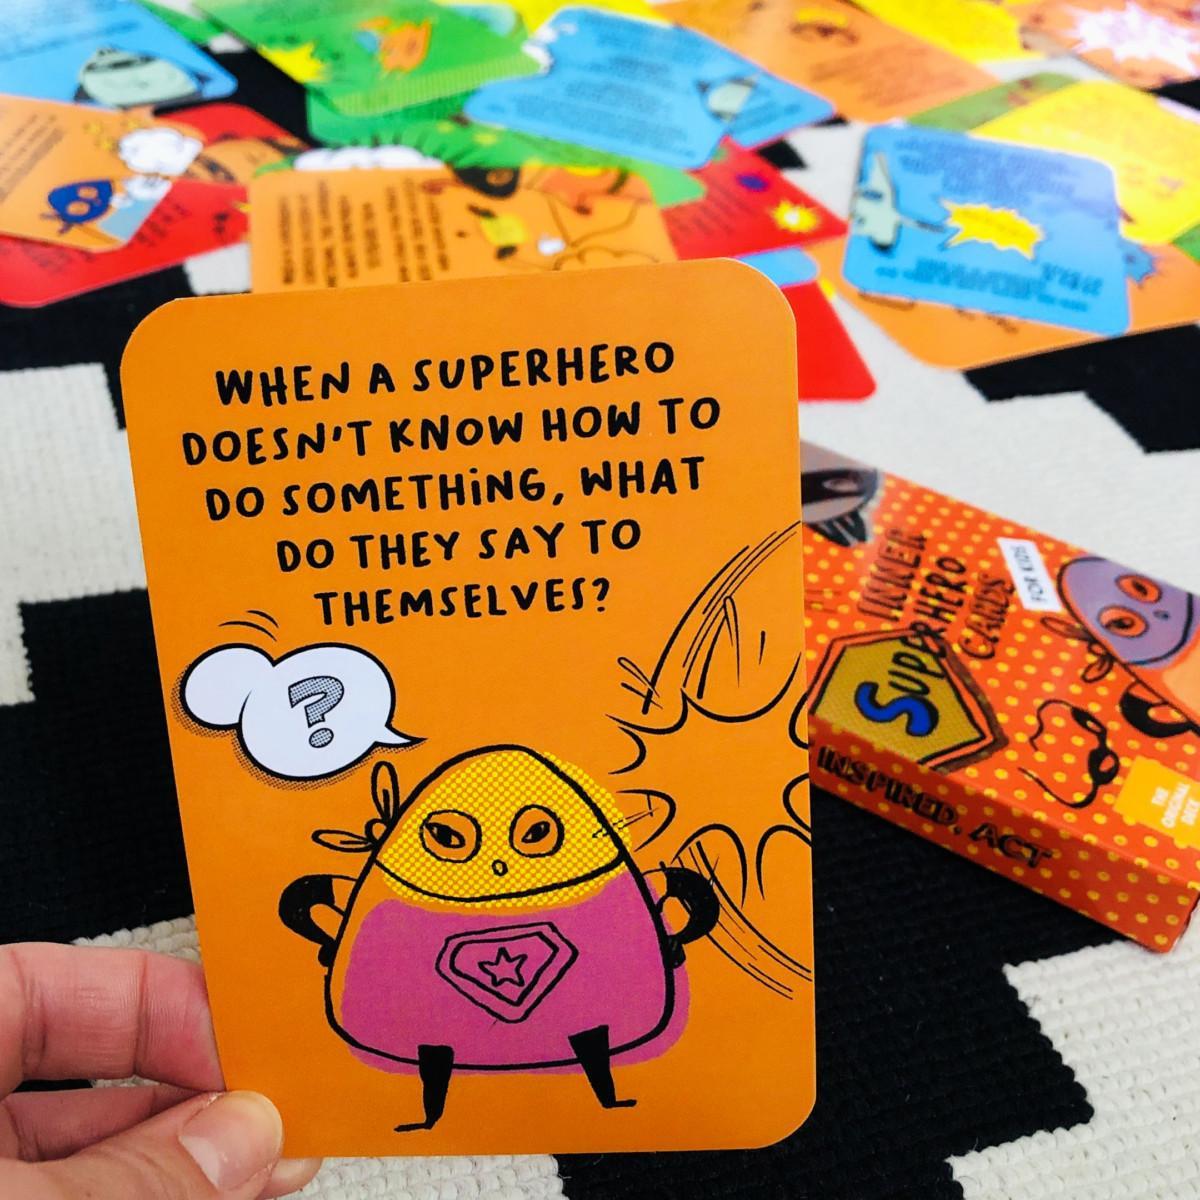 inner-superhero-cards-for-kids-sunny-present-uk-shop